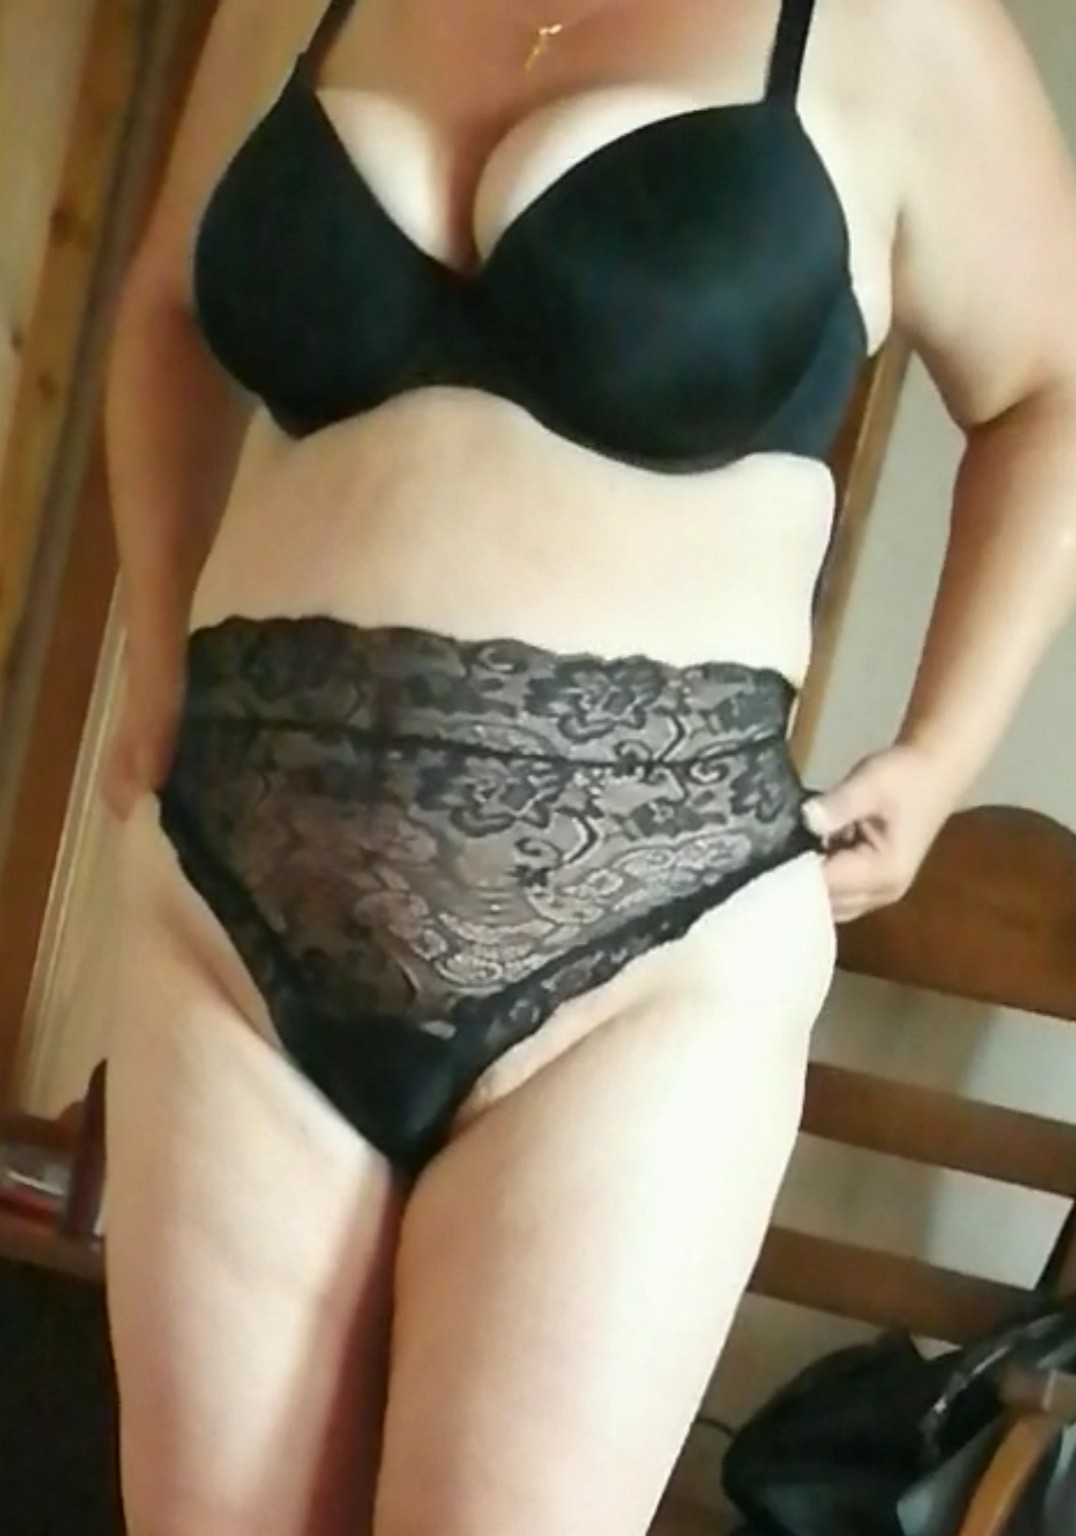 wife big tits in black bra - N